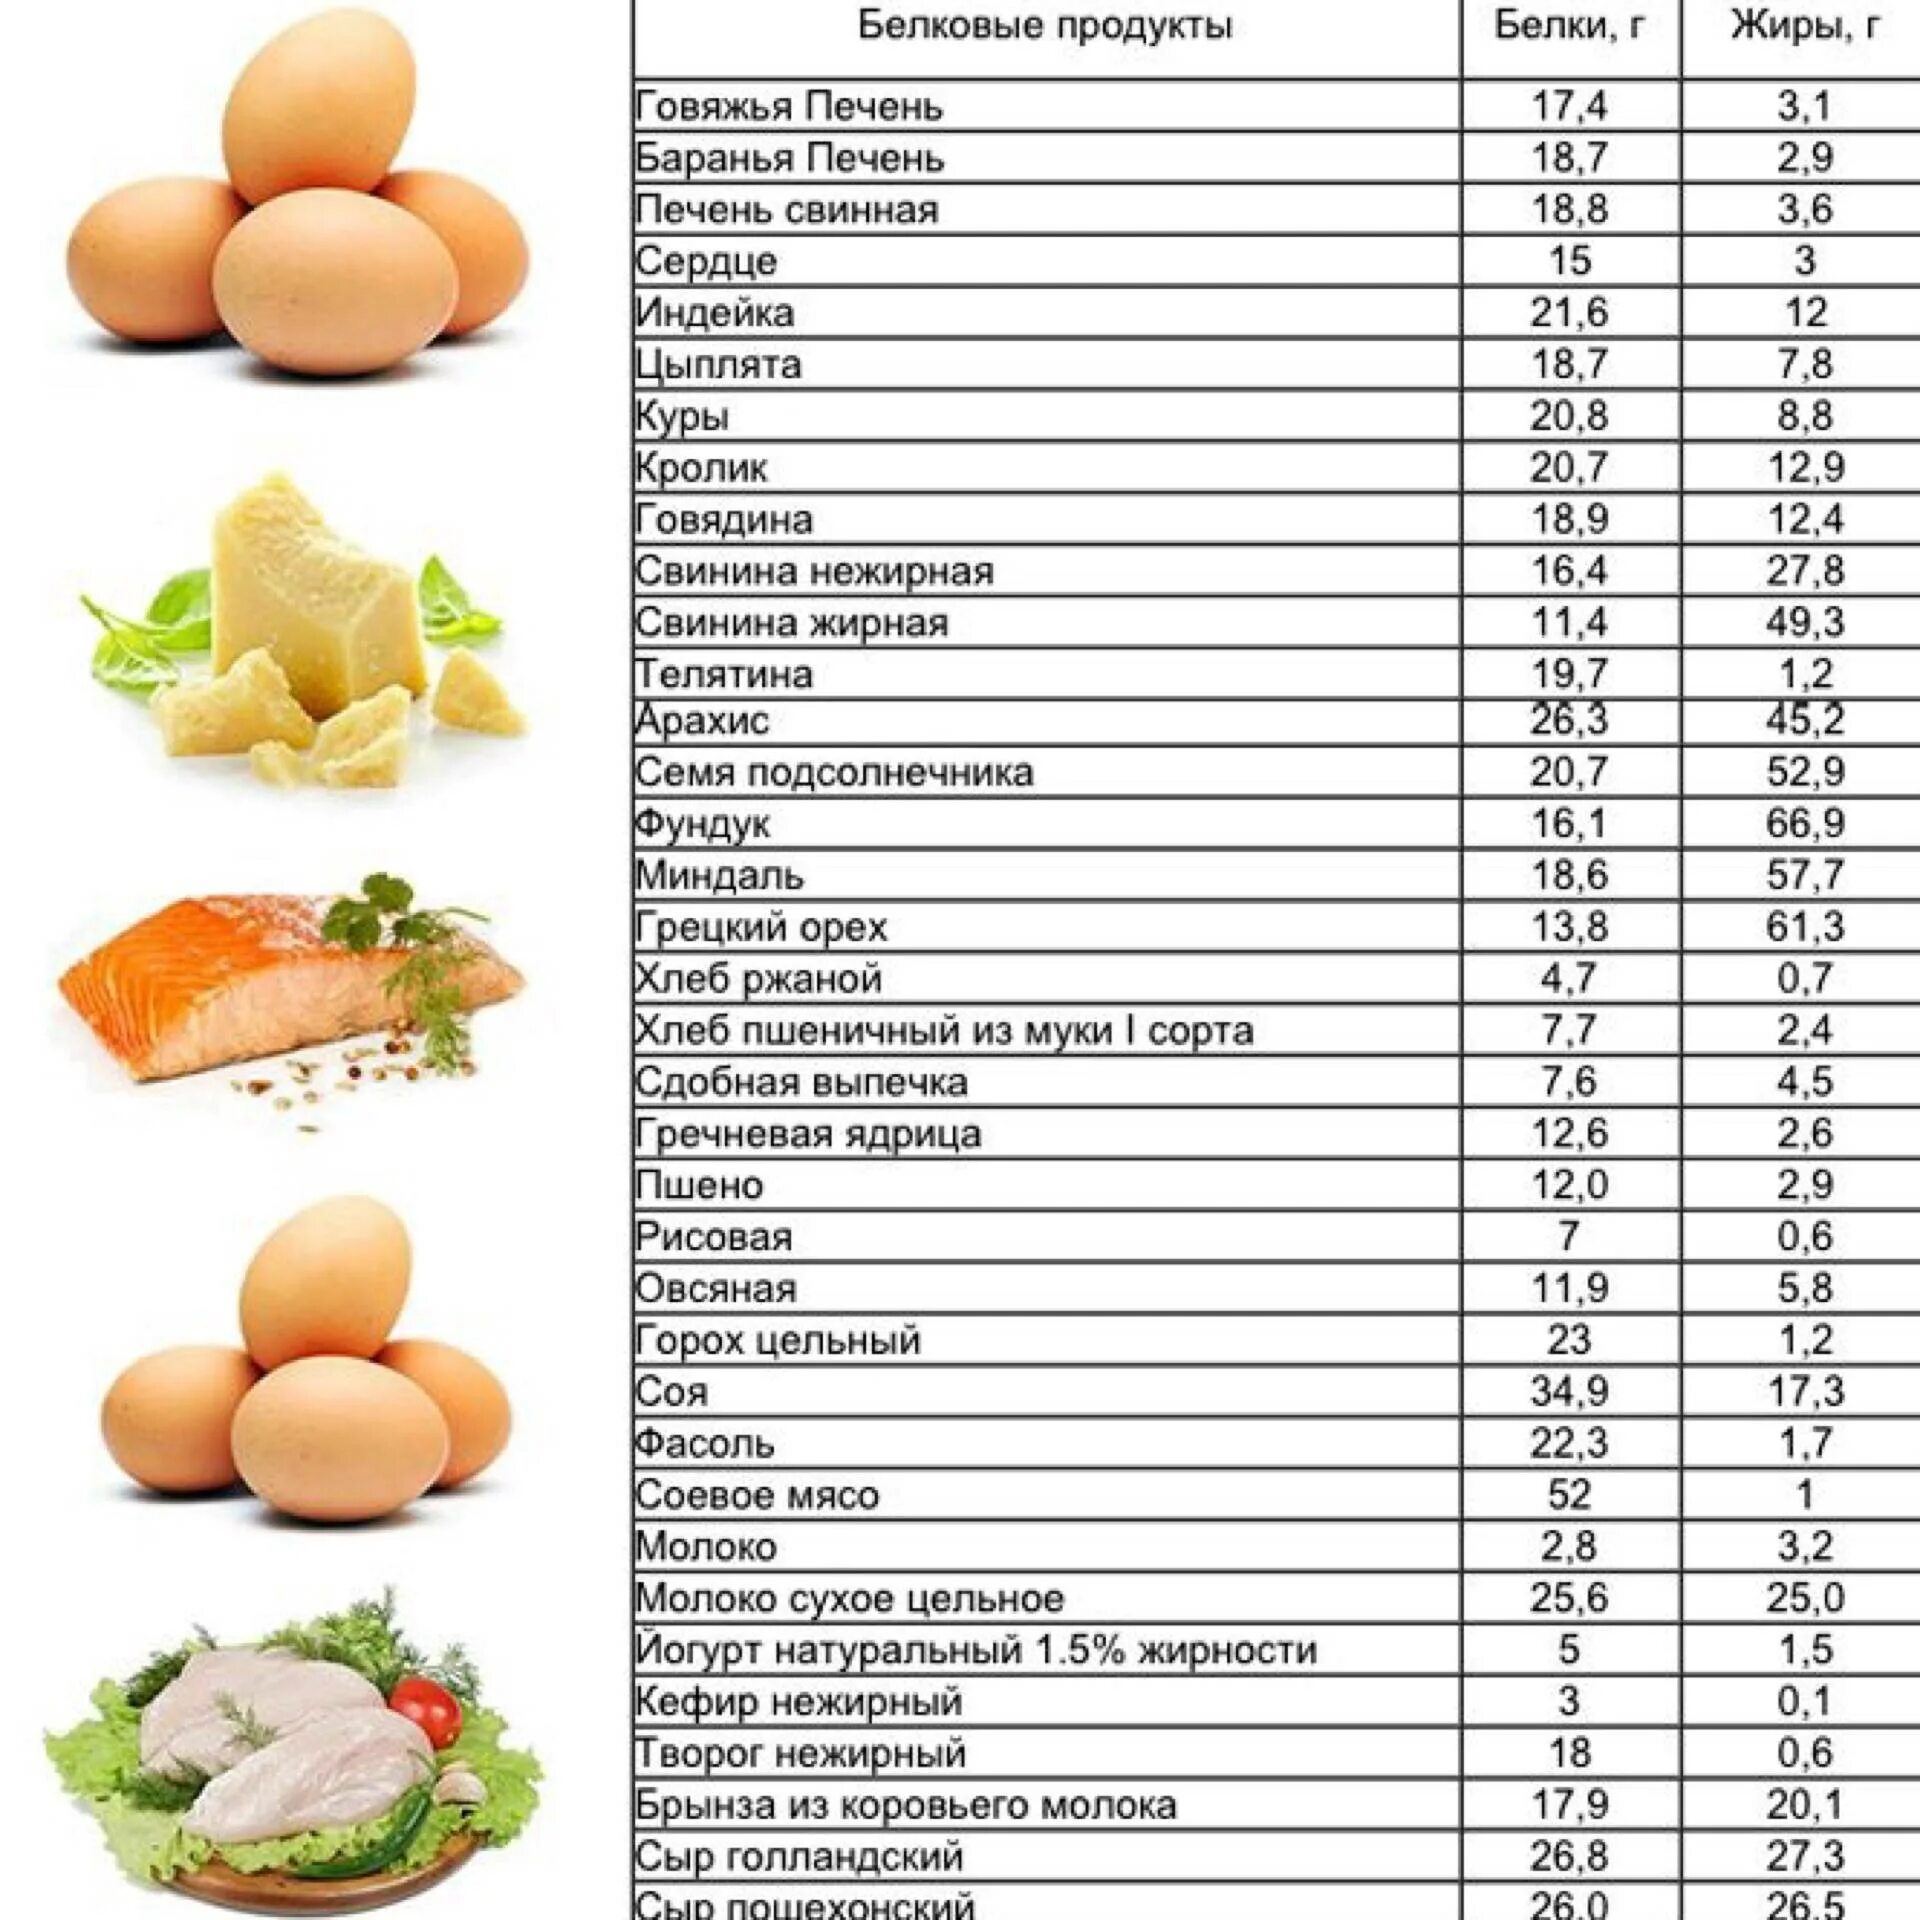 В овощах есть белок. Продукты содержащие белок для похудения таблица список продуктов. Продукты богатые белком для похудения таблица список. Продукты богатые белком для похудения таблица список и блюда. Продукты богатые белком список продуктов таблица.